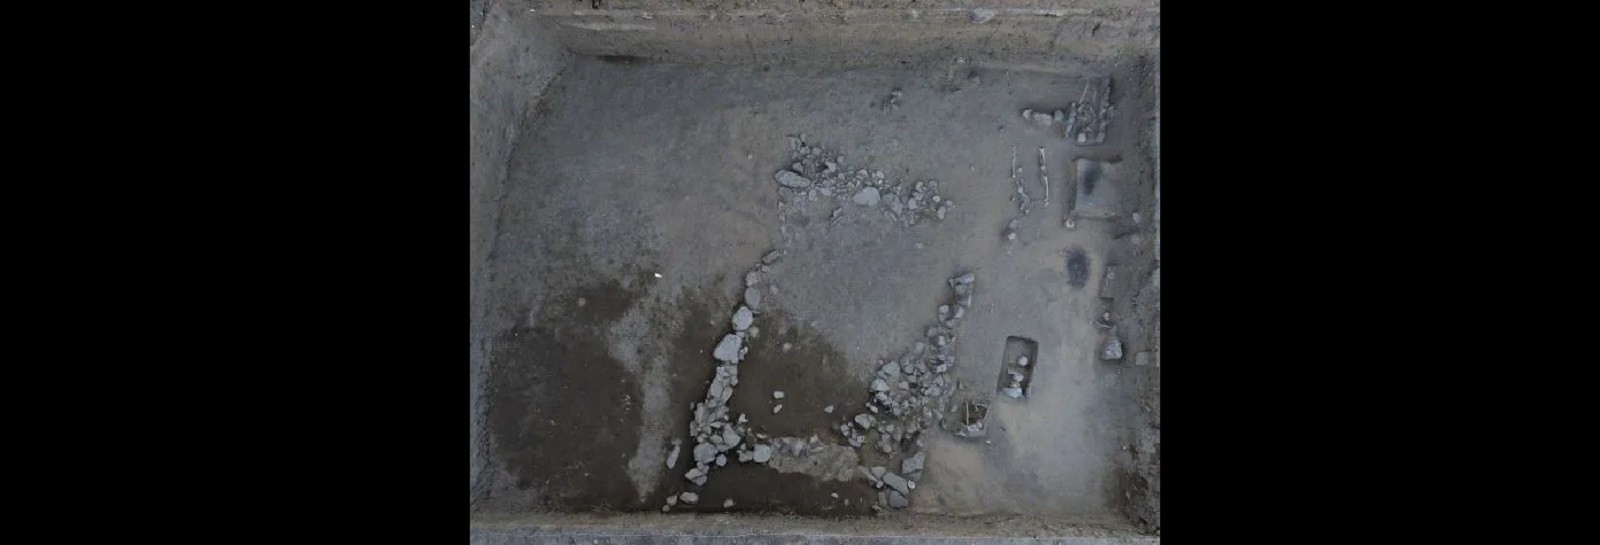 Wykopaliska odsłoniły nekropolię. To obiekt pochodzący z czasów średniowiecza